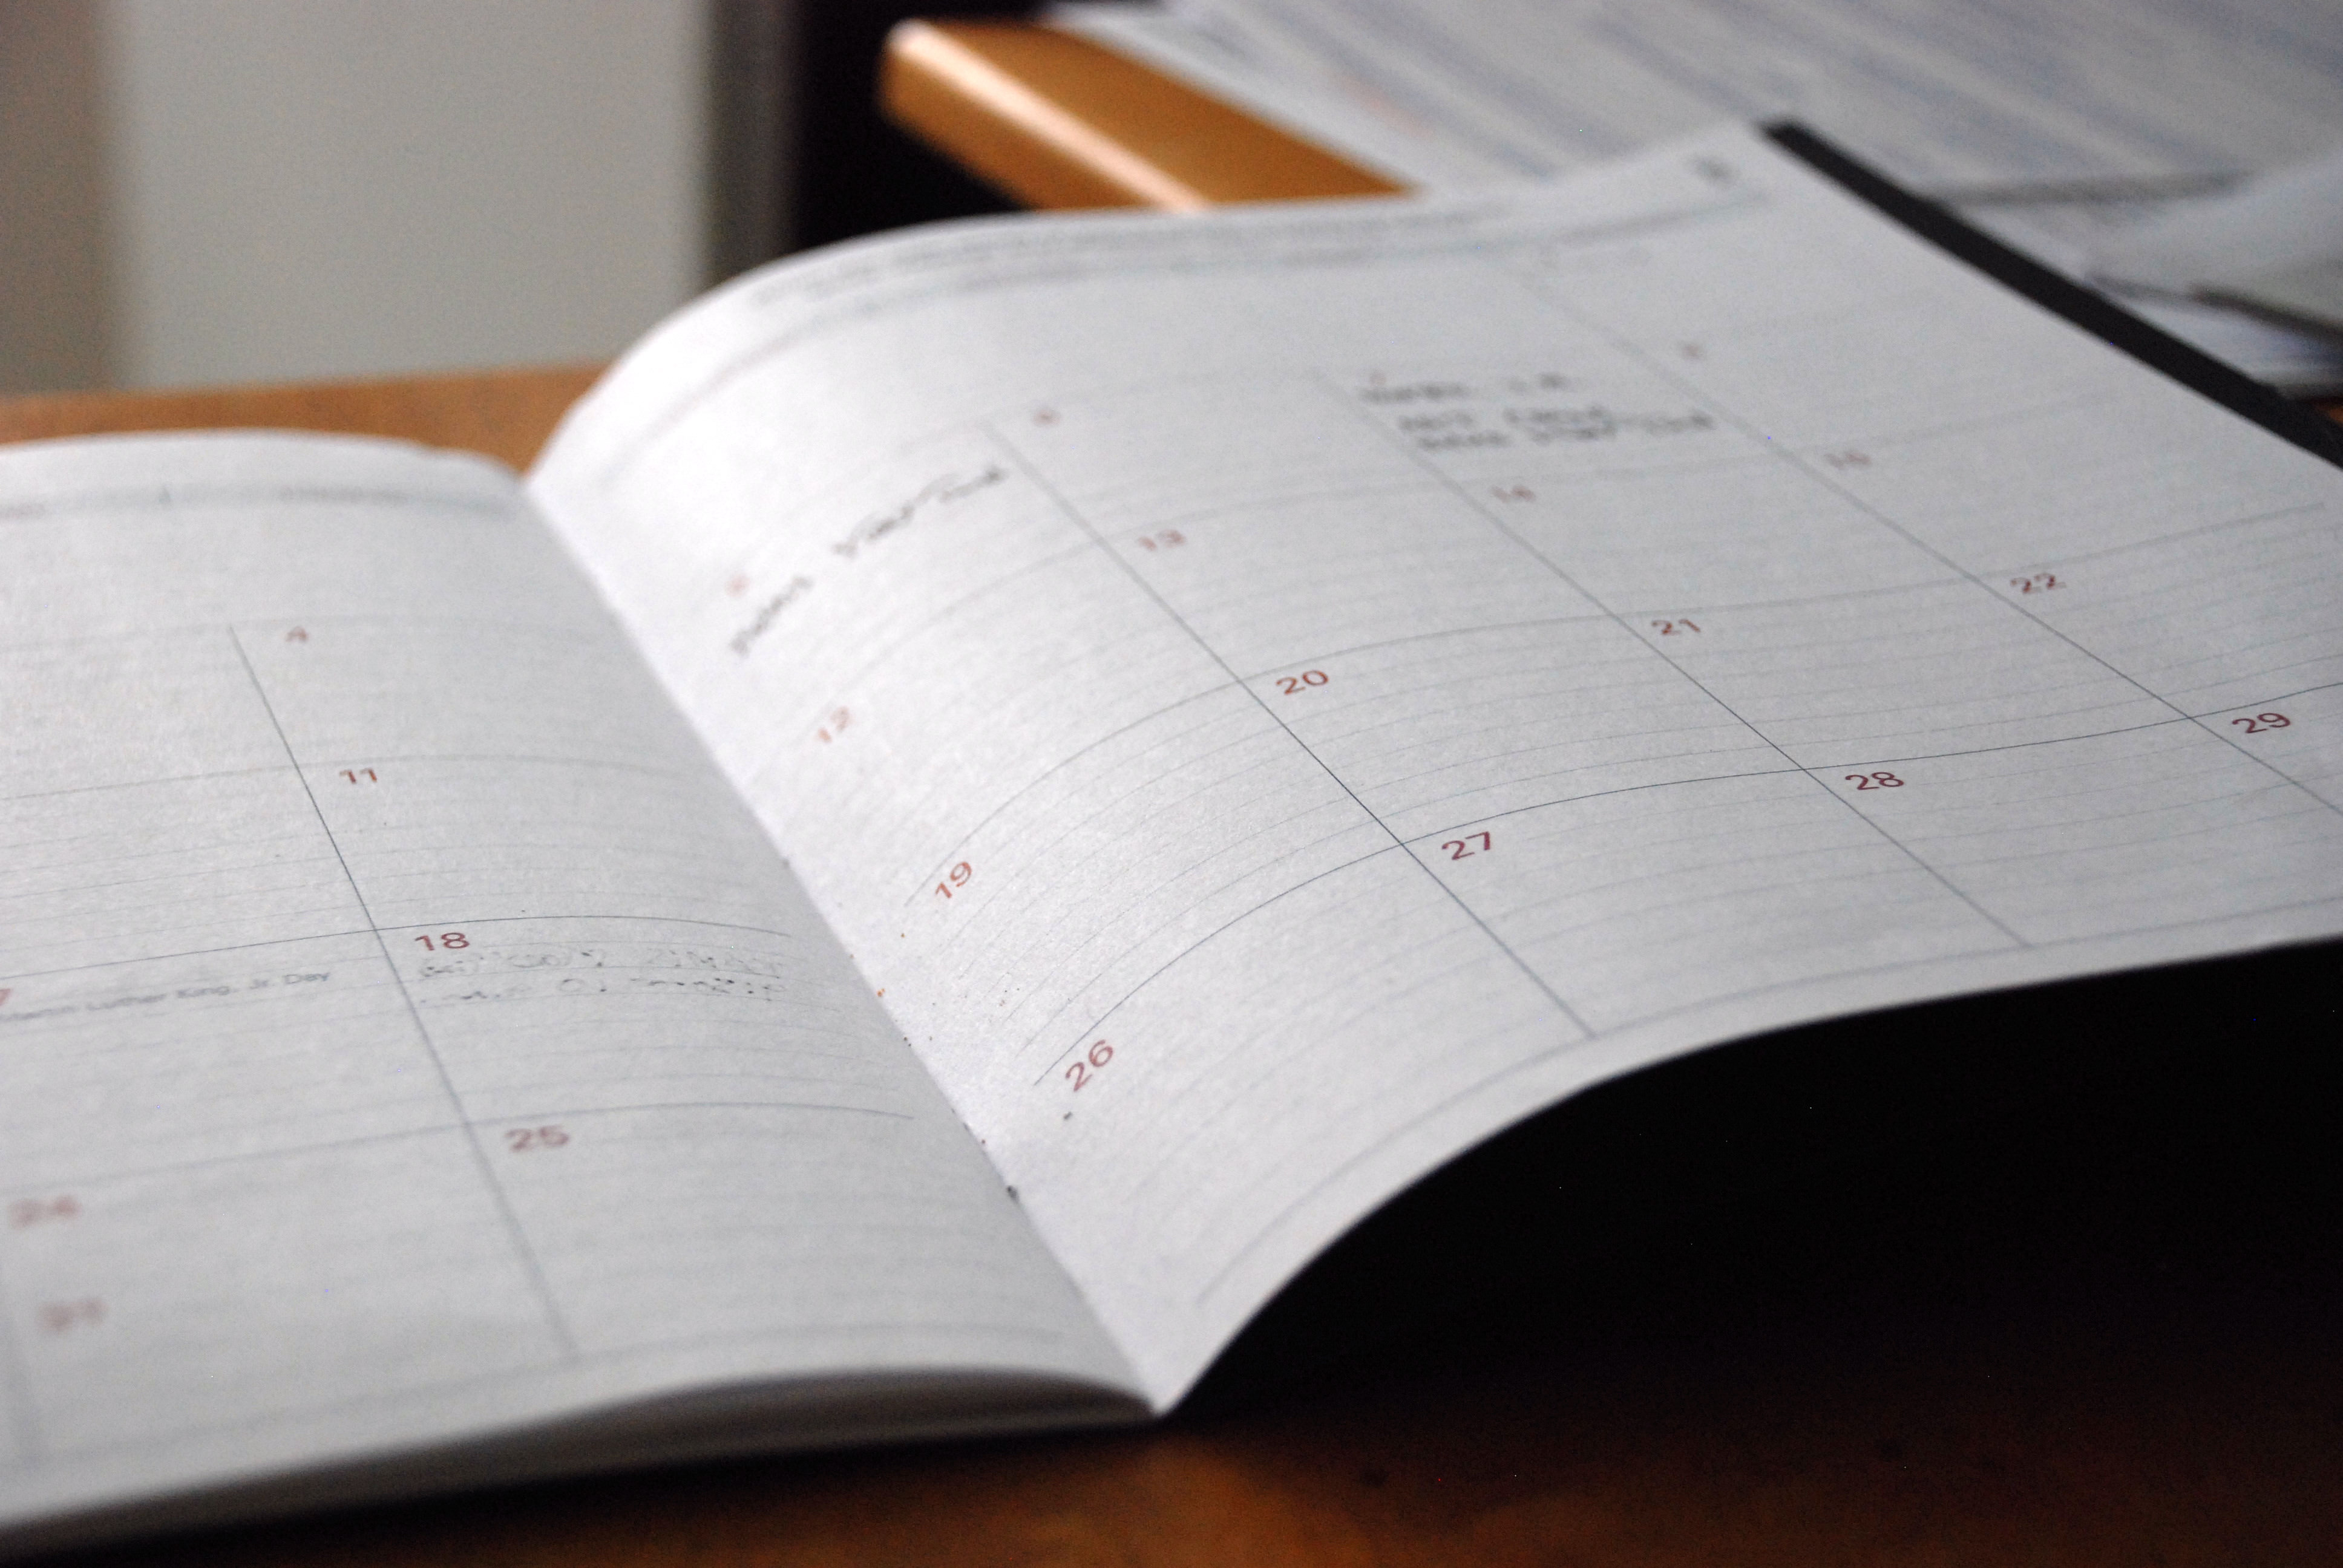 The #OpenBlog editorial calendar